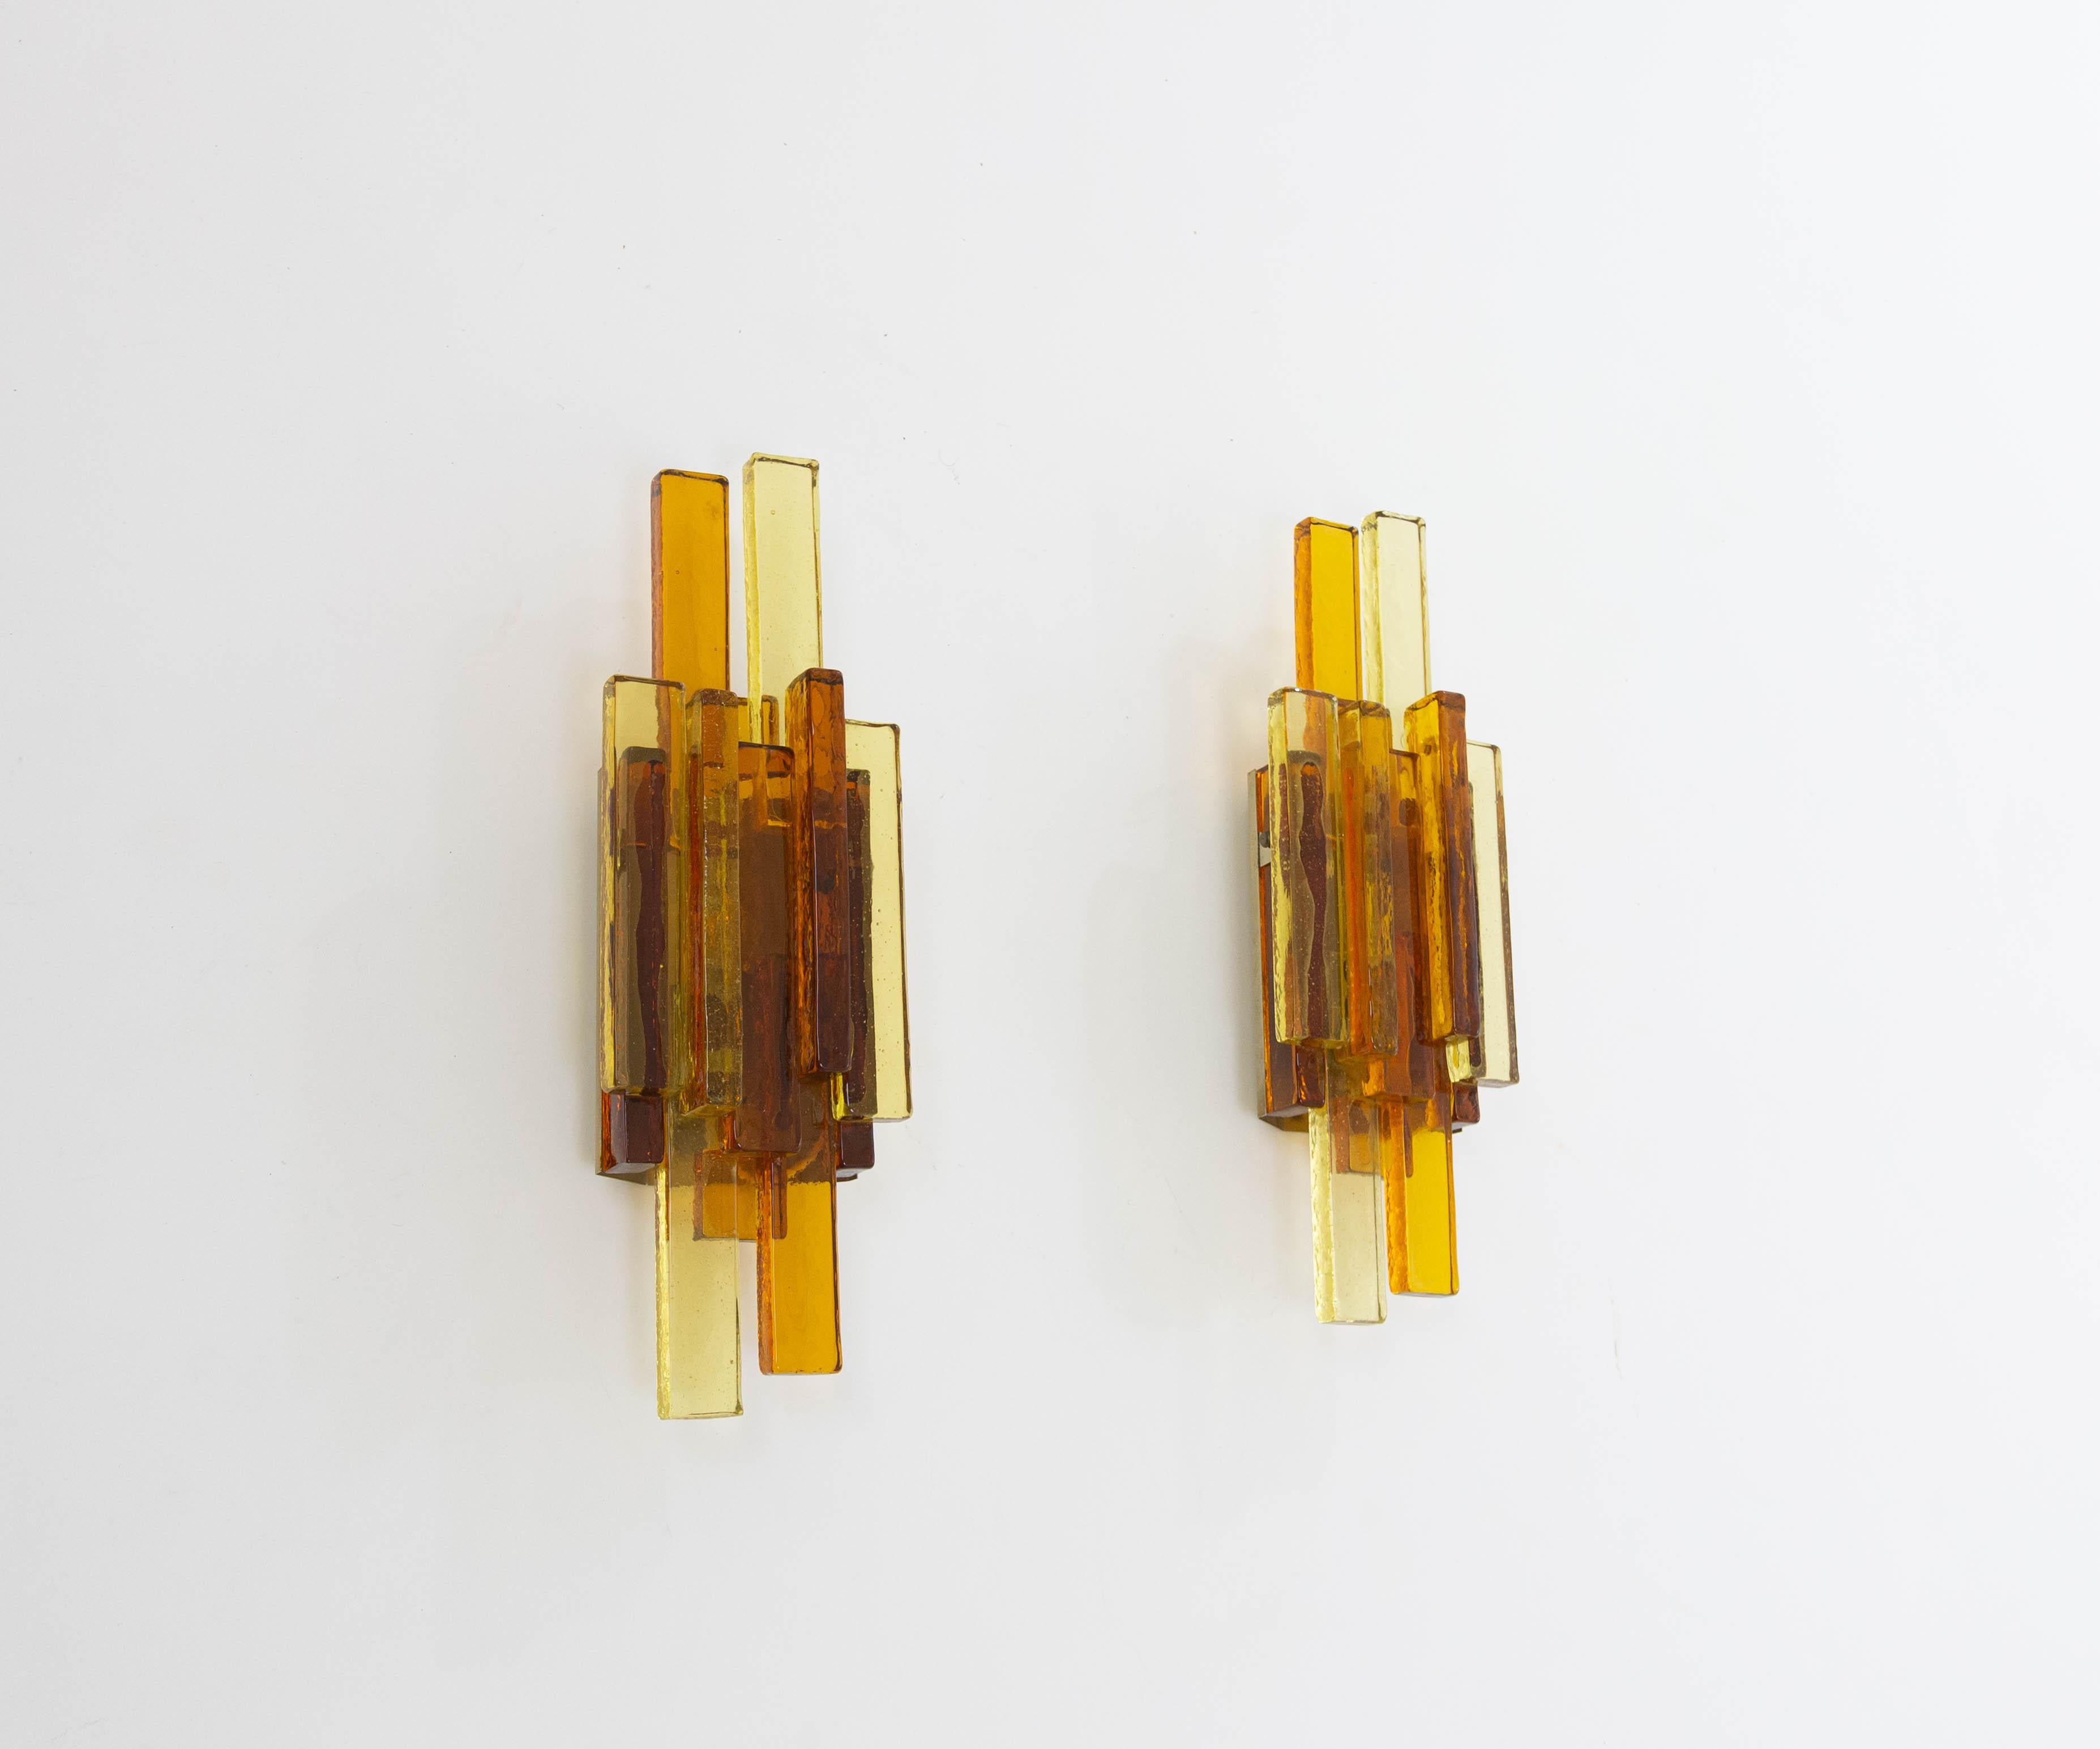 Ein Paar Glaswandleuchten Nr. 5104, entworfen von Svend Aage Holm Sørensen für seine eigene Firma Holm Sørensen & Co.

Wunderschönes Design mit goldenem und bernsteinfarbenem Glas, das den Lampen ein edles Aussehen verleiht. 

Die Lampen sind